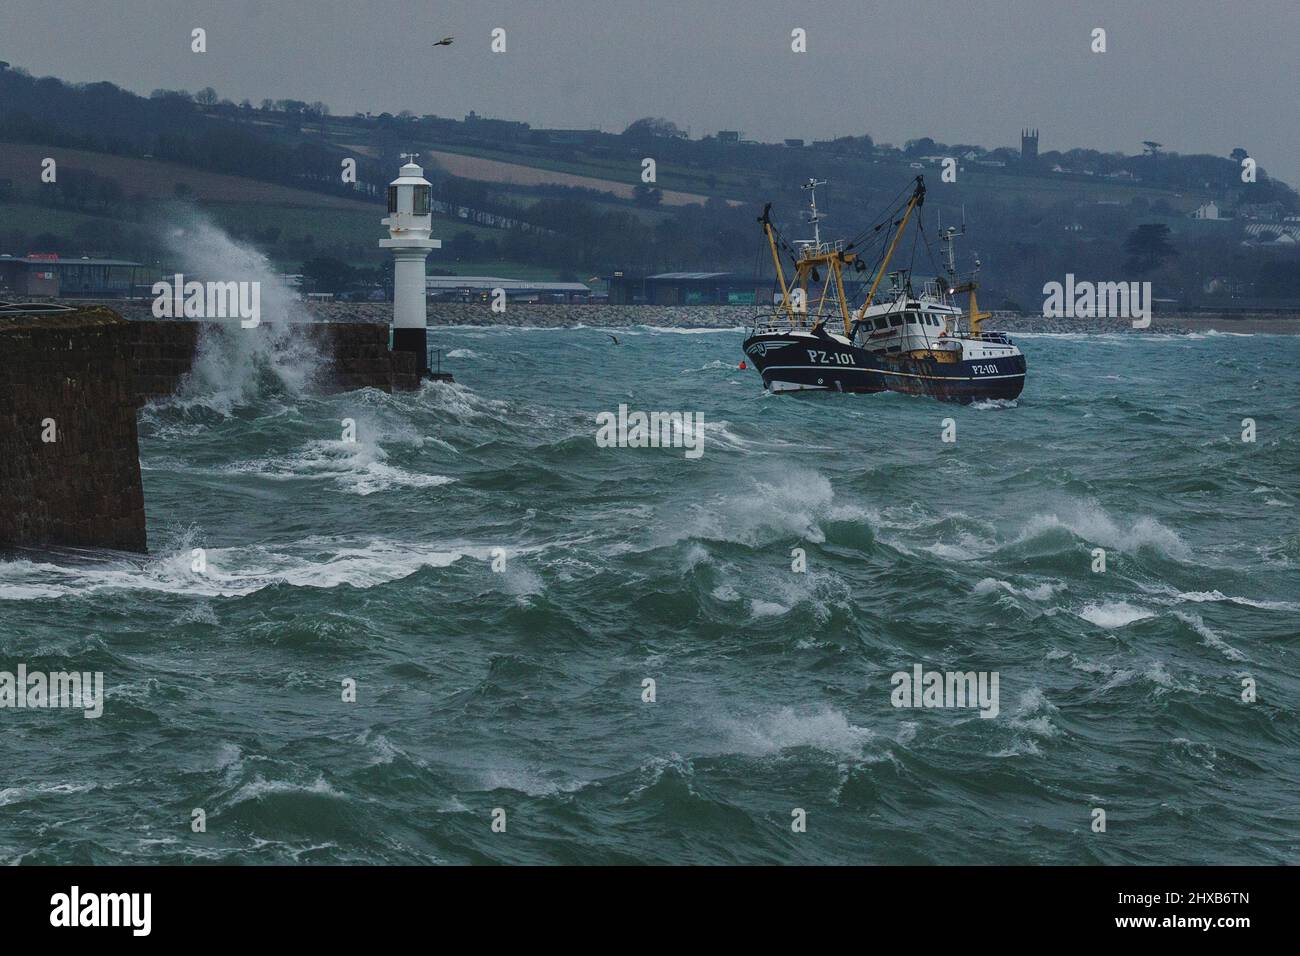 Un peschereccio a strascico proveniente dalla flotta di pescatori di Newlyn si sbatte selvaggiamente nei mari accidentati, mentre entra nel porto di Penzance per le riparazioni. Foto Stock